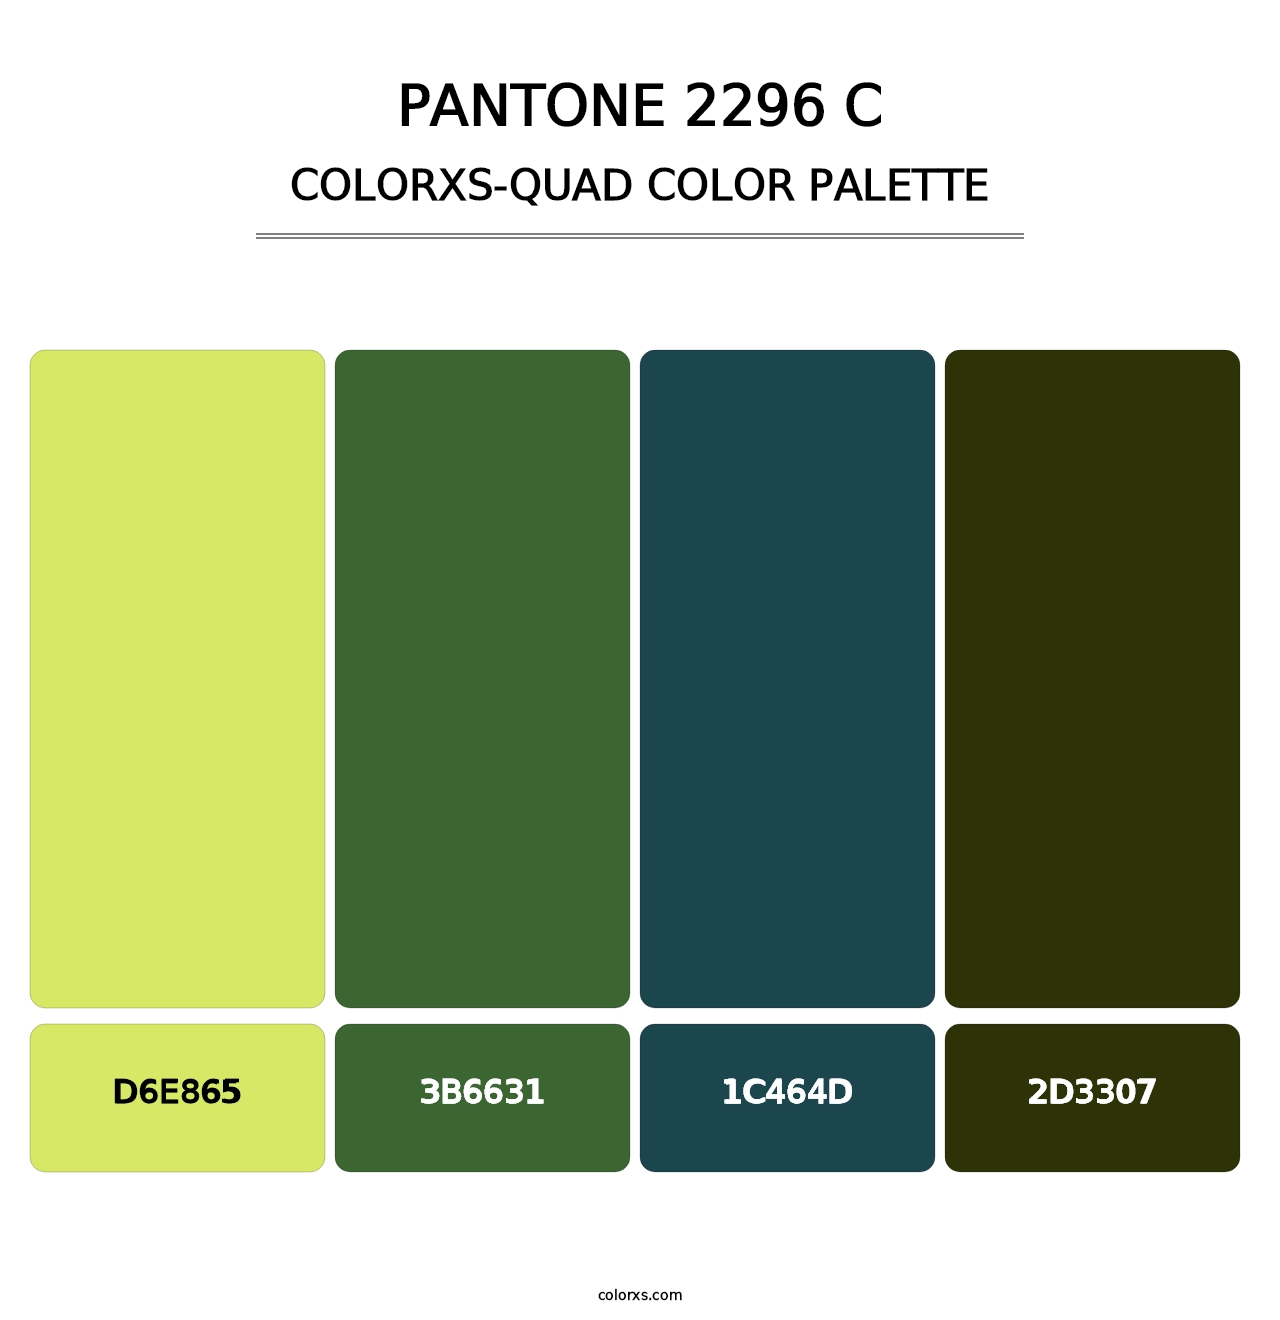 PANTONE 2296 C - Colorxs Quad Palette